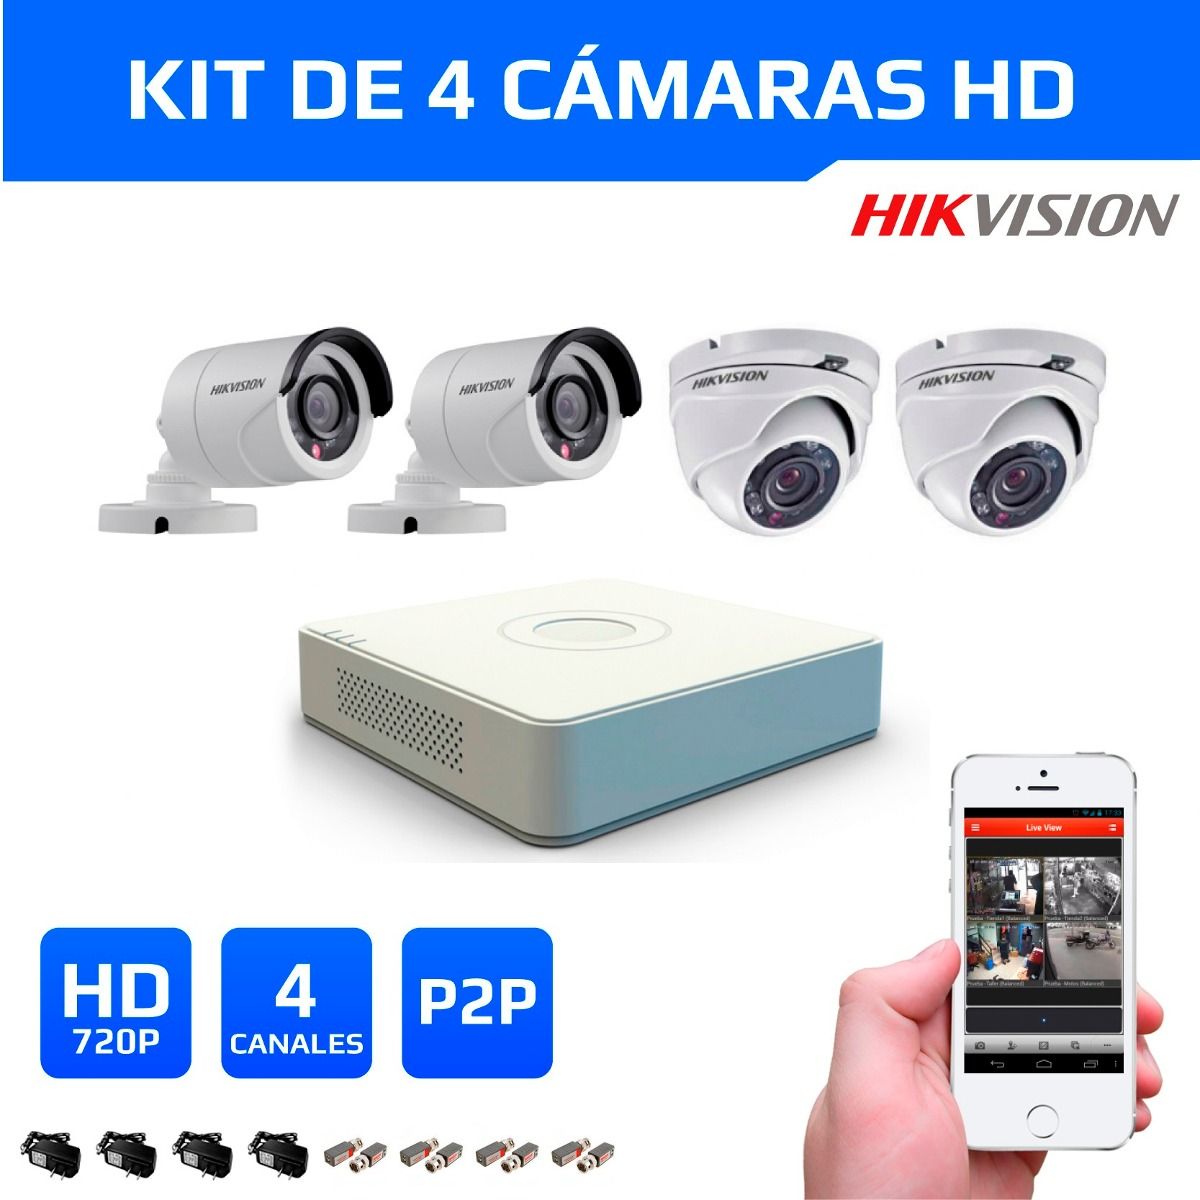 Kit 4 Seguridad HD Hikvision 720p – GR Soluciones